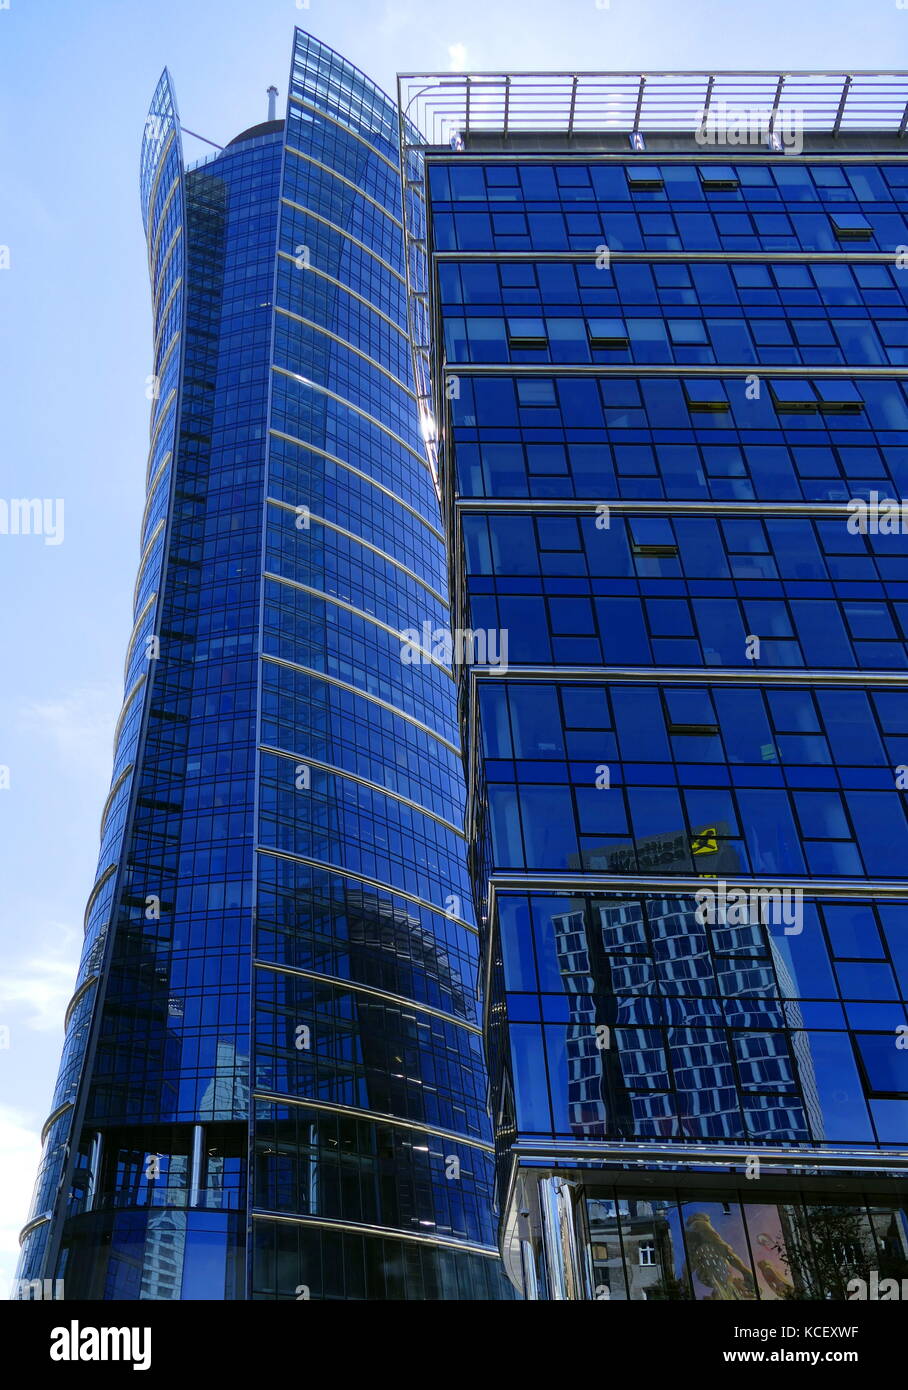 Photographie de la spire de Varsovie est un complexe d'Neomodern les immeubles de bureaux à Varsovie, Pologne construit par le promoteur immobilier belge Stade Artevelde. Il se compose d'un 220 mètres de la tour principale avec une façade en verre hyperboloide, Varsovie Spire A. En date du 21e siècle Banque D'Images